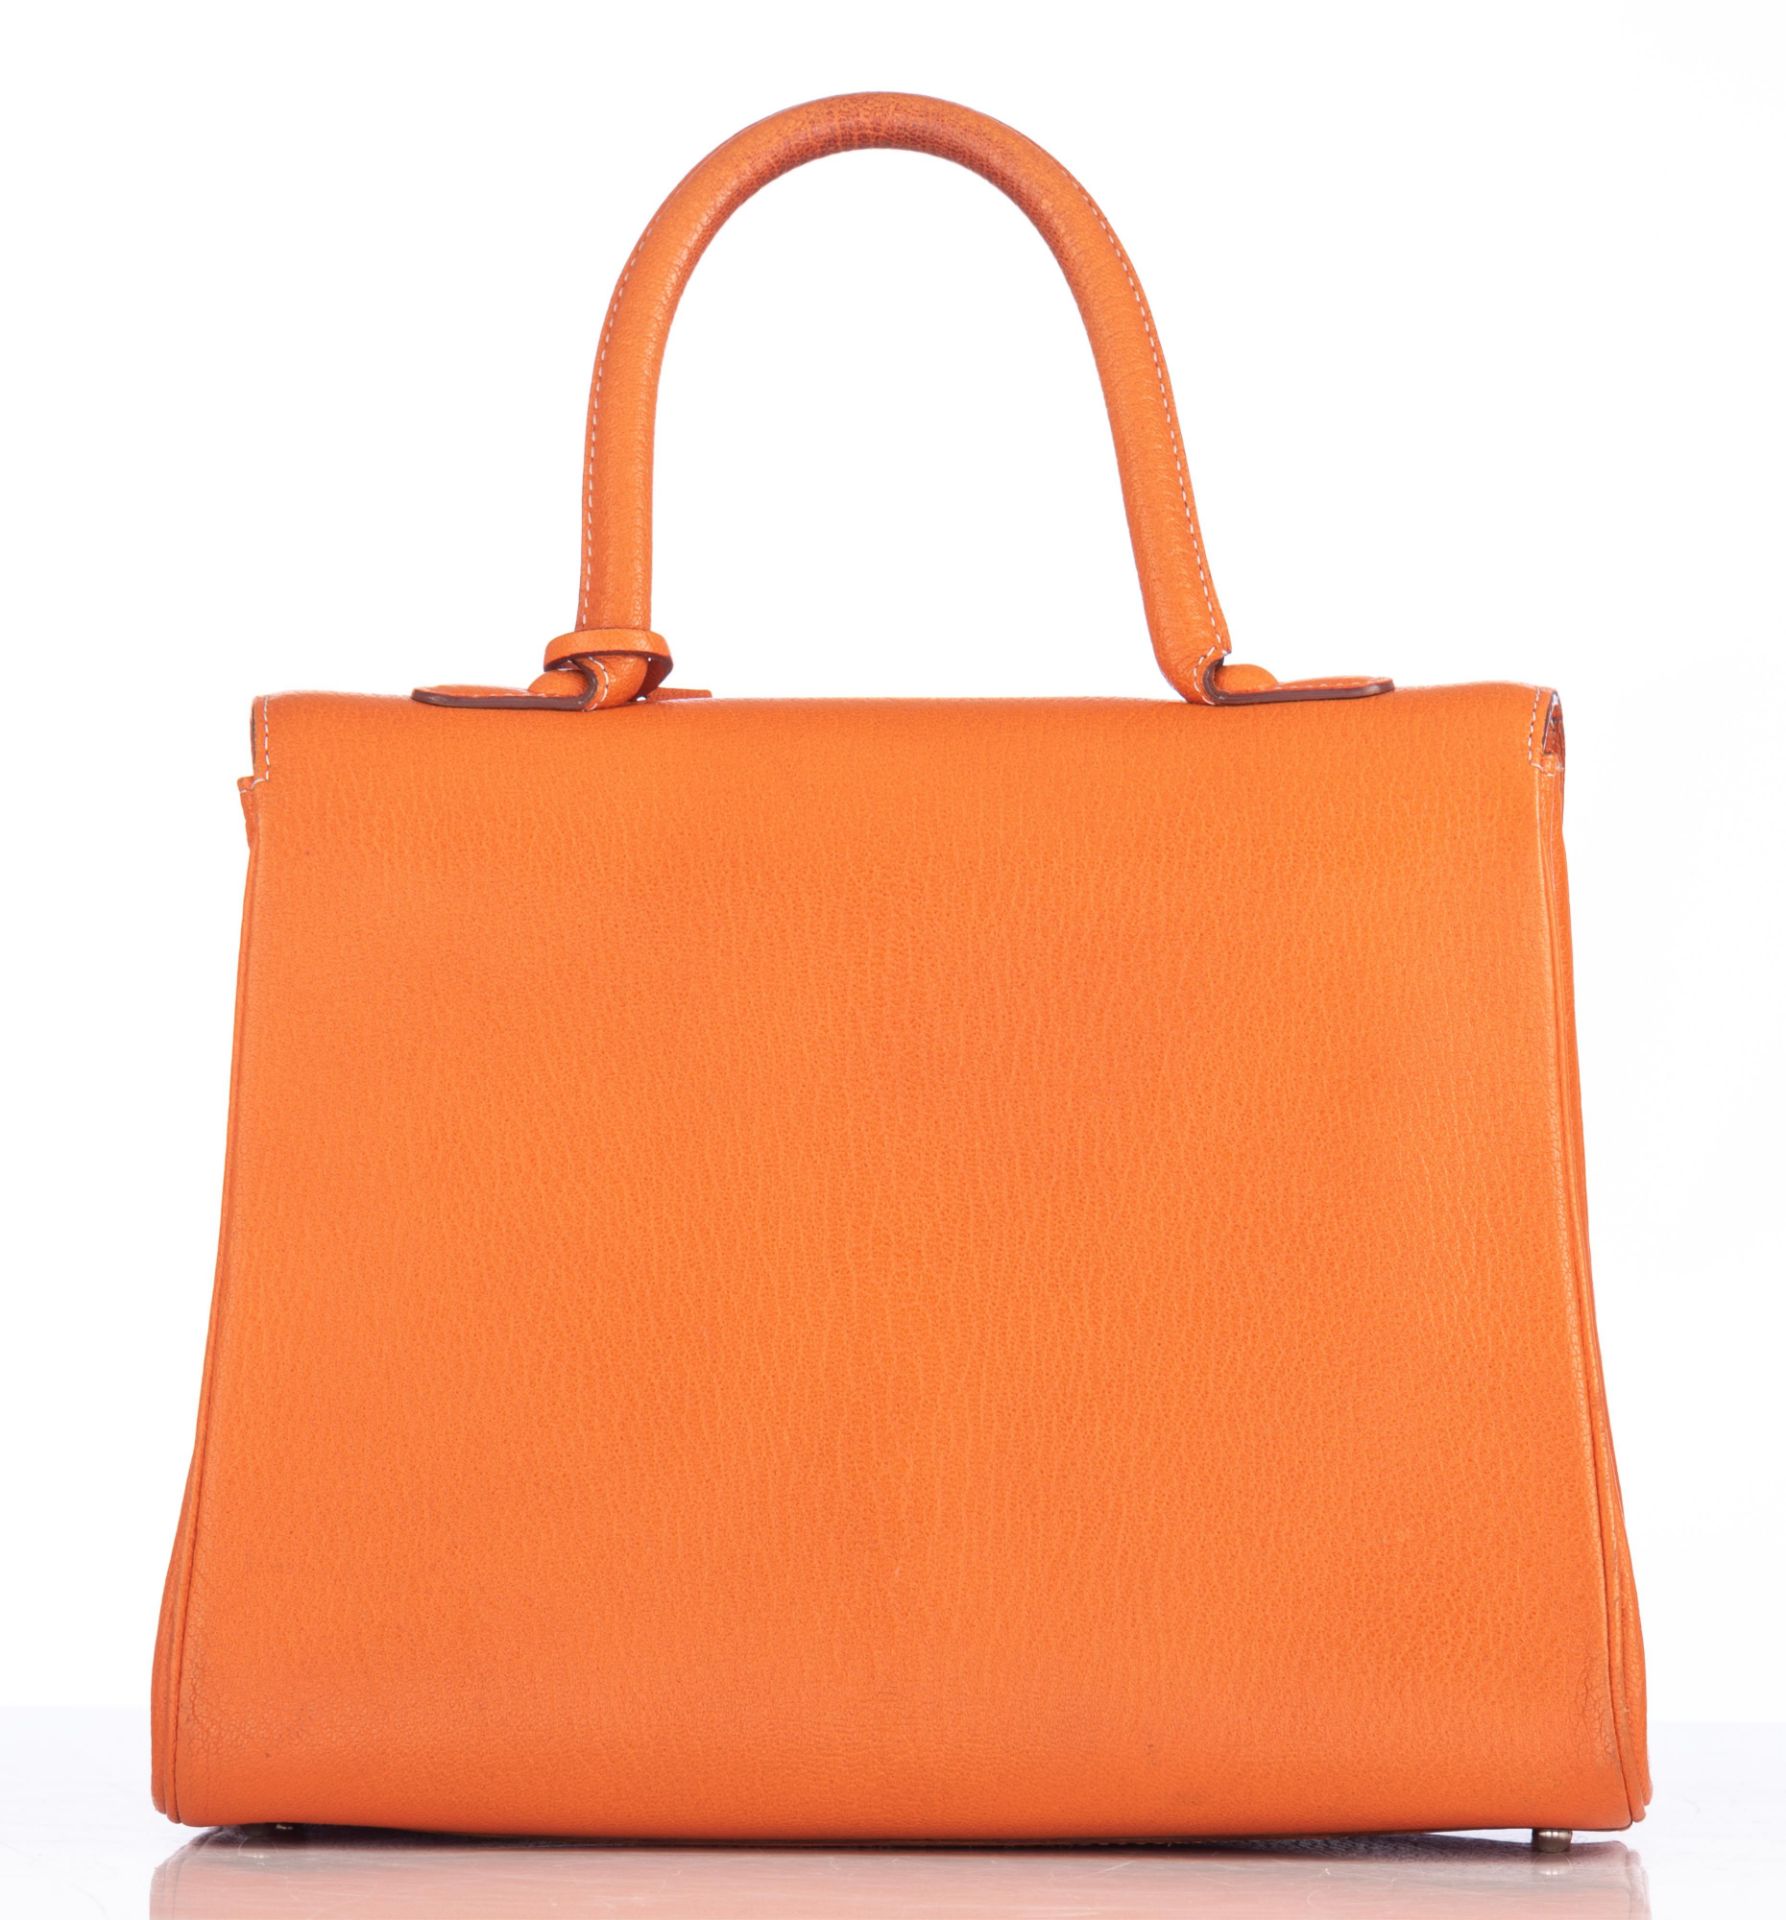 An orange leather Delvaux Brillant MM handbag, H 22 - W 29 cm - D 14,5 cm - Image 5 of 17